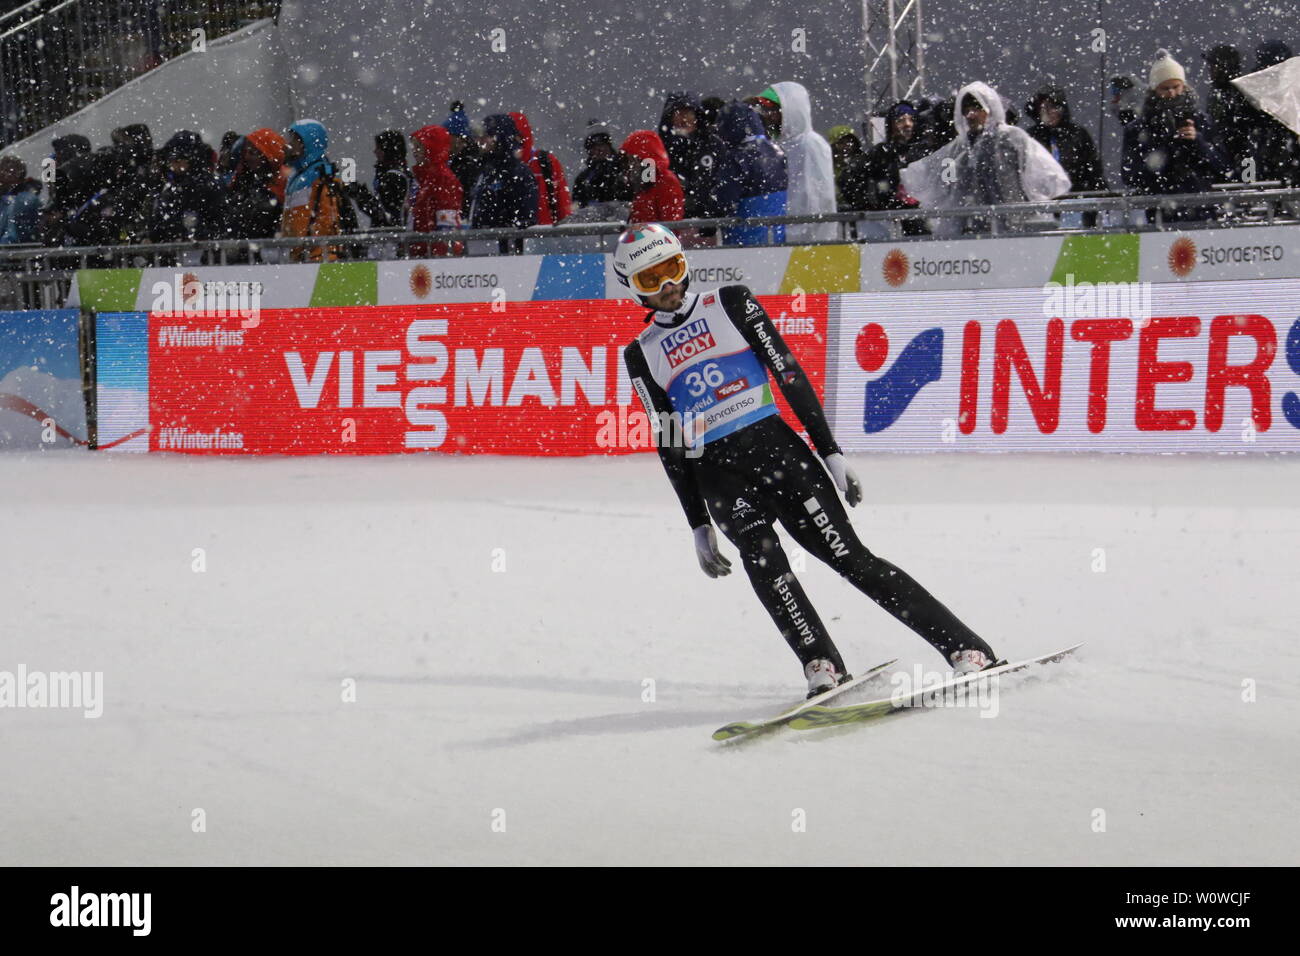 Killian PEIER (Schweiz / CH) nach seinem zweiten surgido beim Skispringen Herren NH, FIS Nordische Ski-WM 2019 en Seefeld Foto de stock